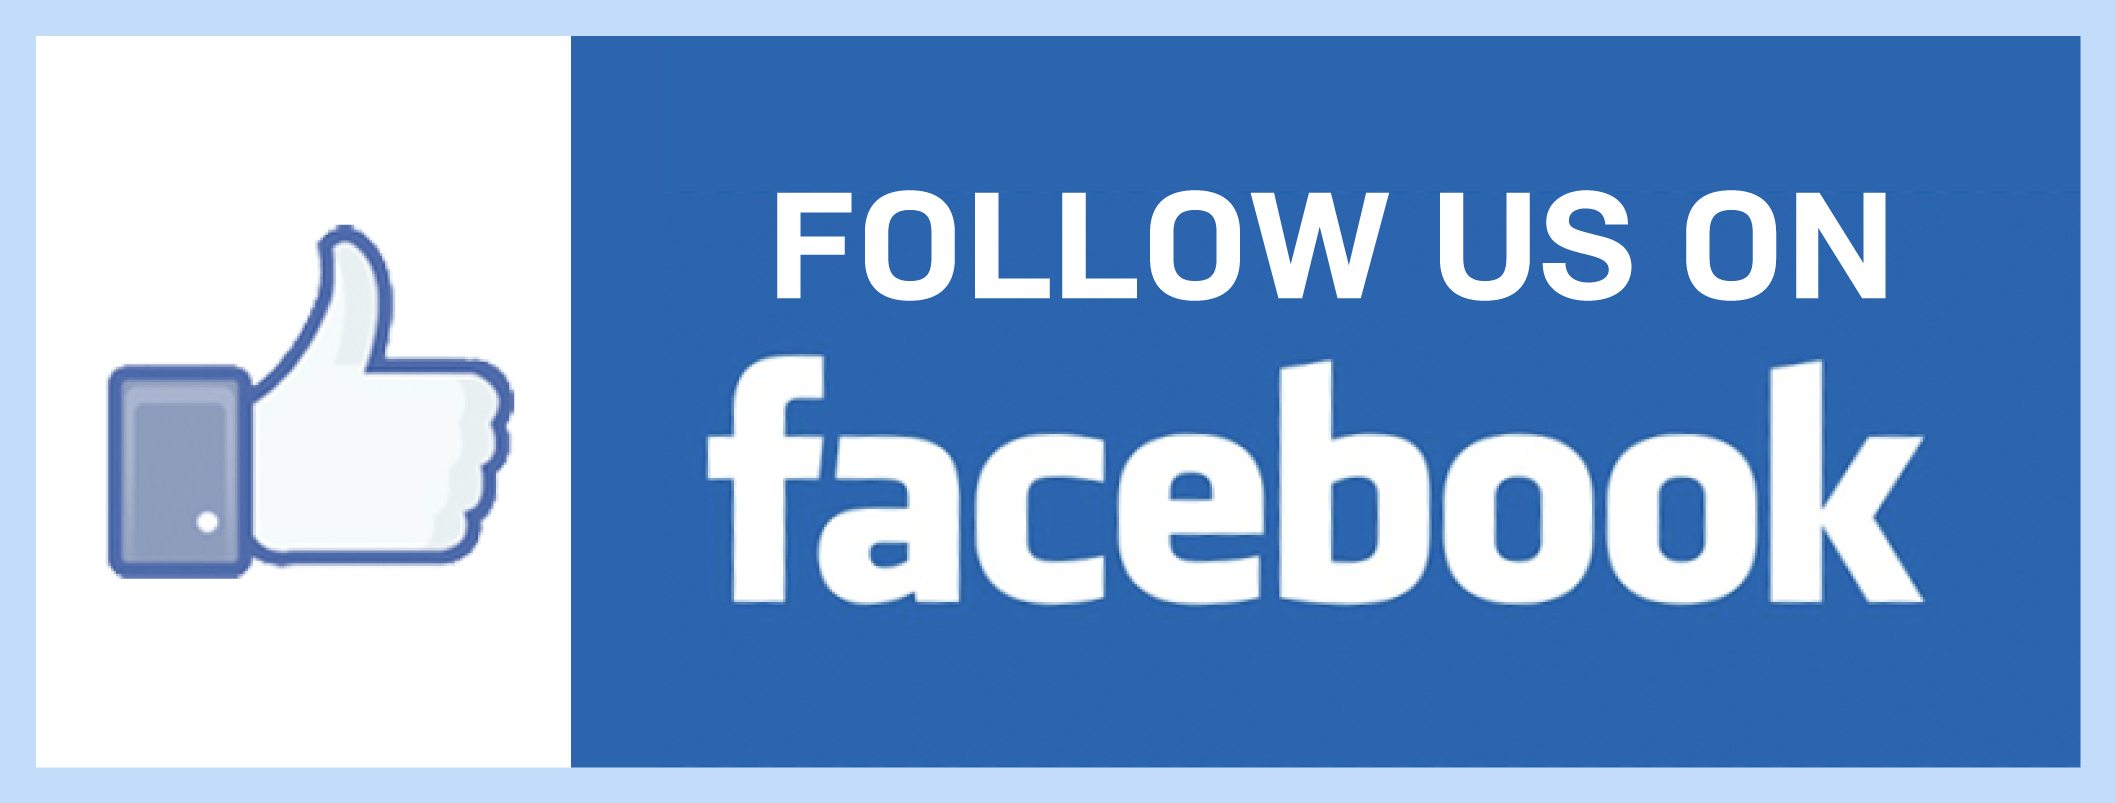 Facebook follow us logo